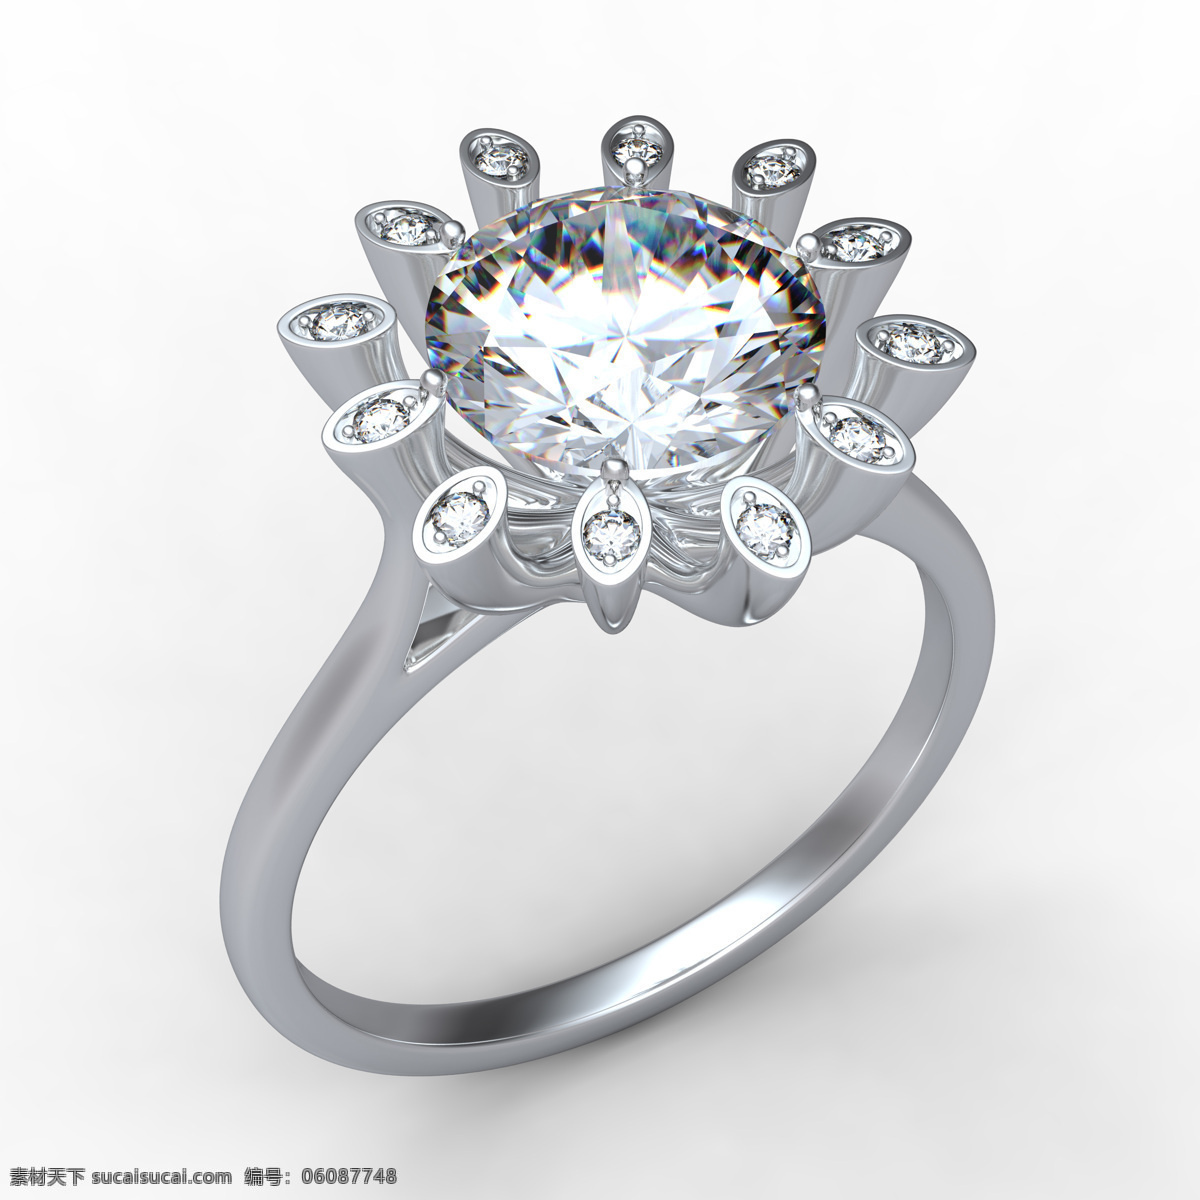 美丽钻石戒指 美丽 钻石 戒指 钻石戒指 钻戒 铂金戒指 婚戒 珠宝服饰 生活百科 白色